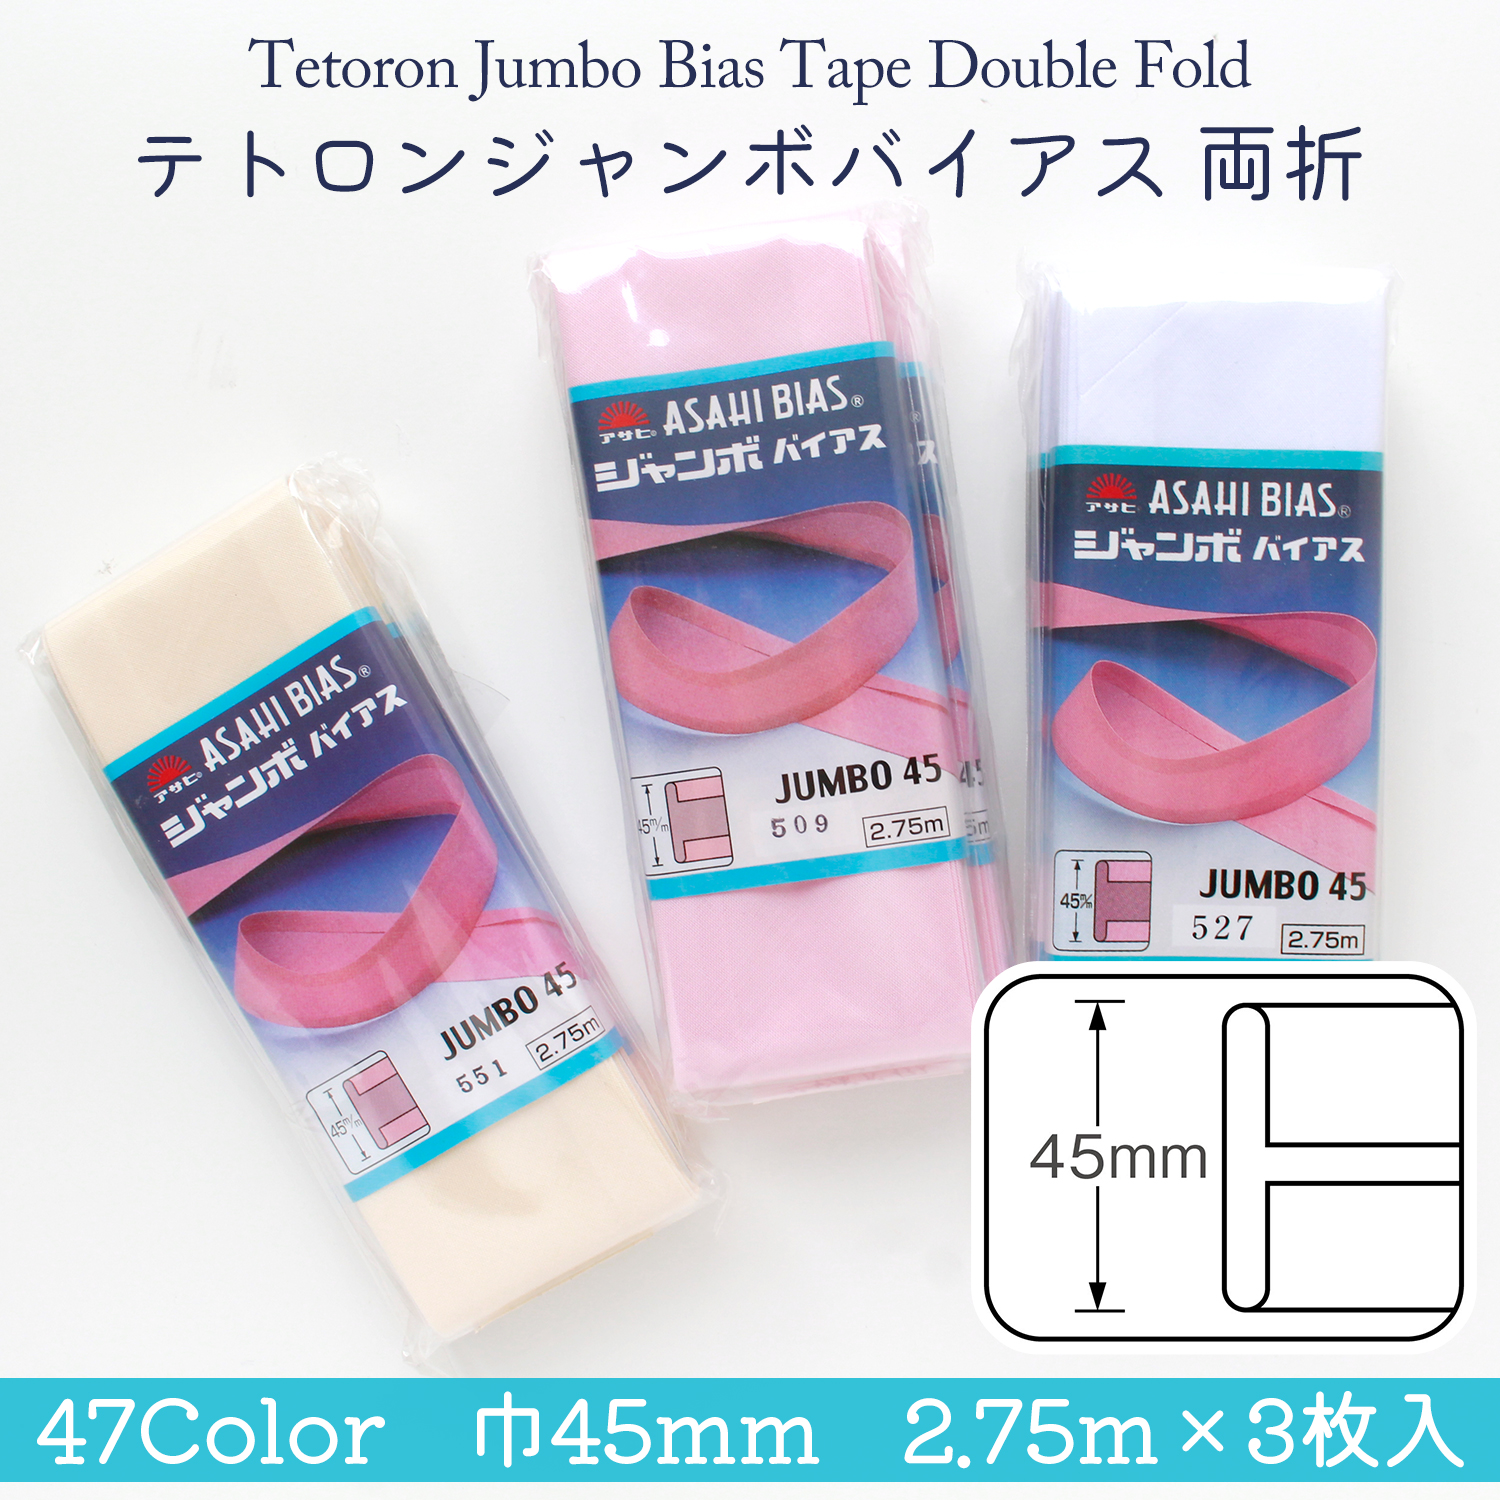 Tetoron Jumbo Bias Tape Double Fold Width 45mm 2.75m×3pcs (box)